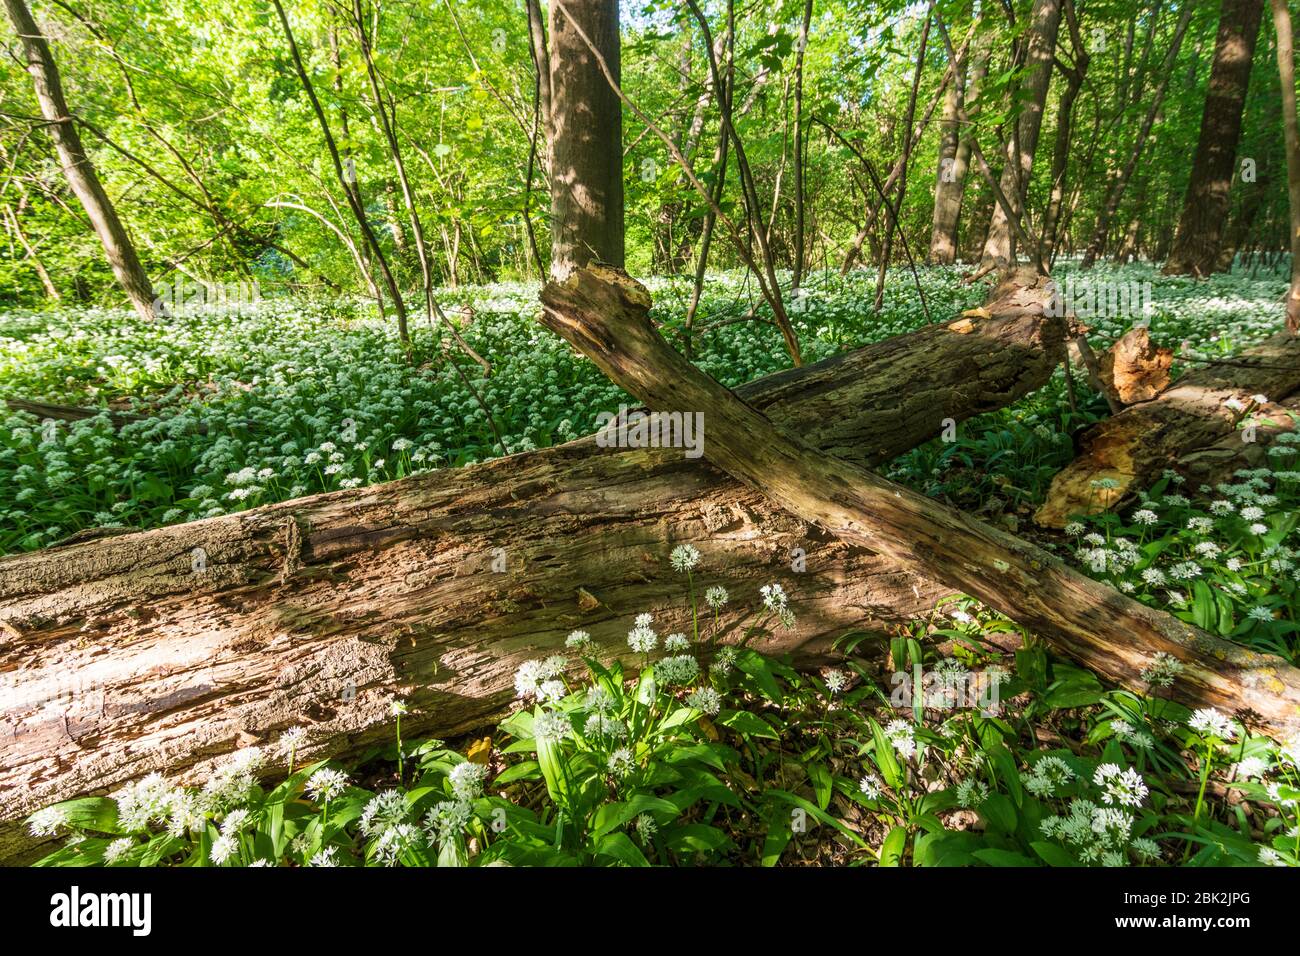 Nationalpark Donauauen, Donau-Auen Nationalpark: Blühender Bärlauch (Allium ursinum) im Nationalpark Donauauen, Bärlauch, Bäume, Totholz, Dschungel, Stockfoto